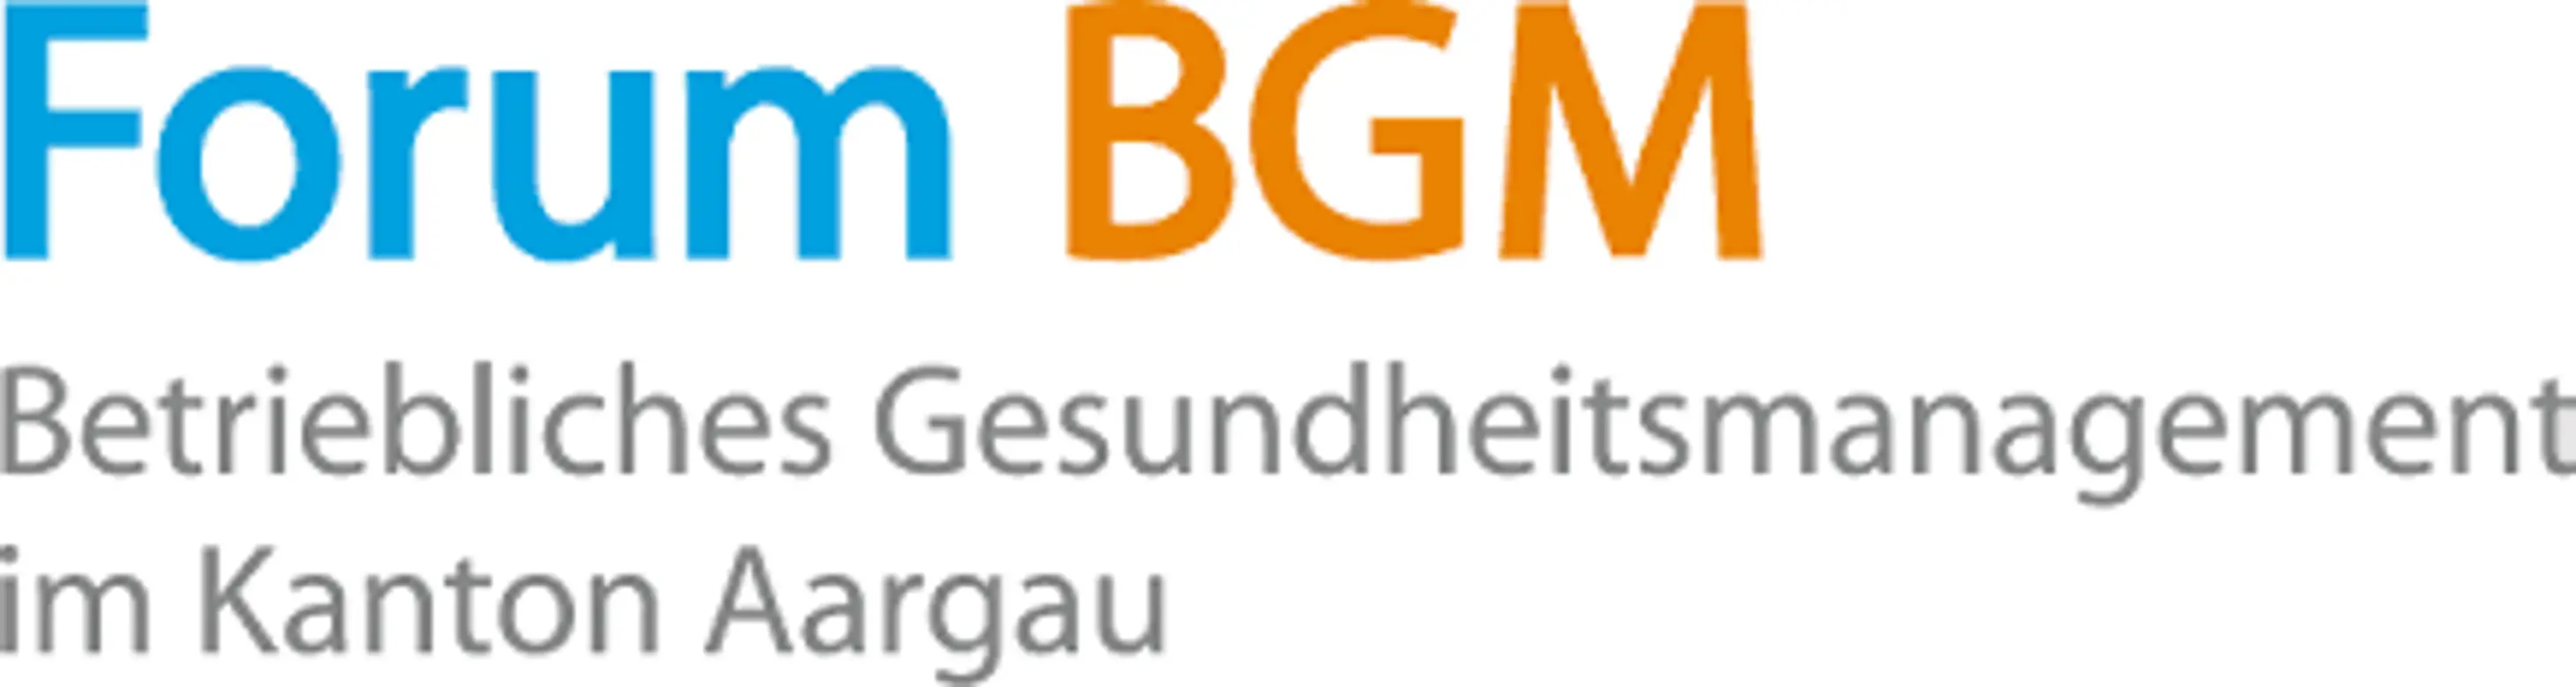 Forum BGM Aargau